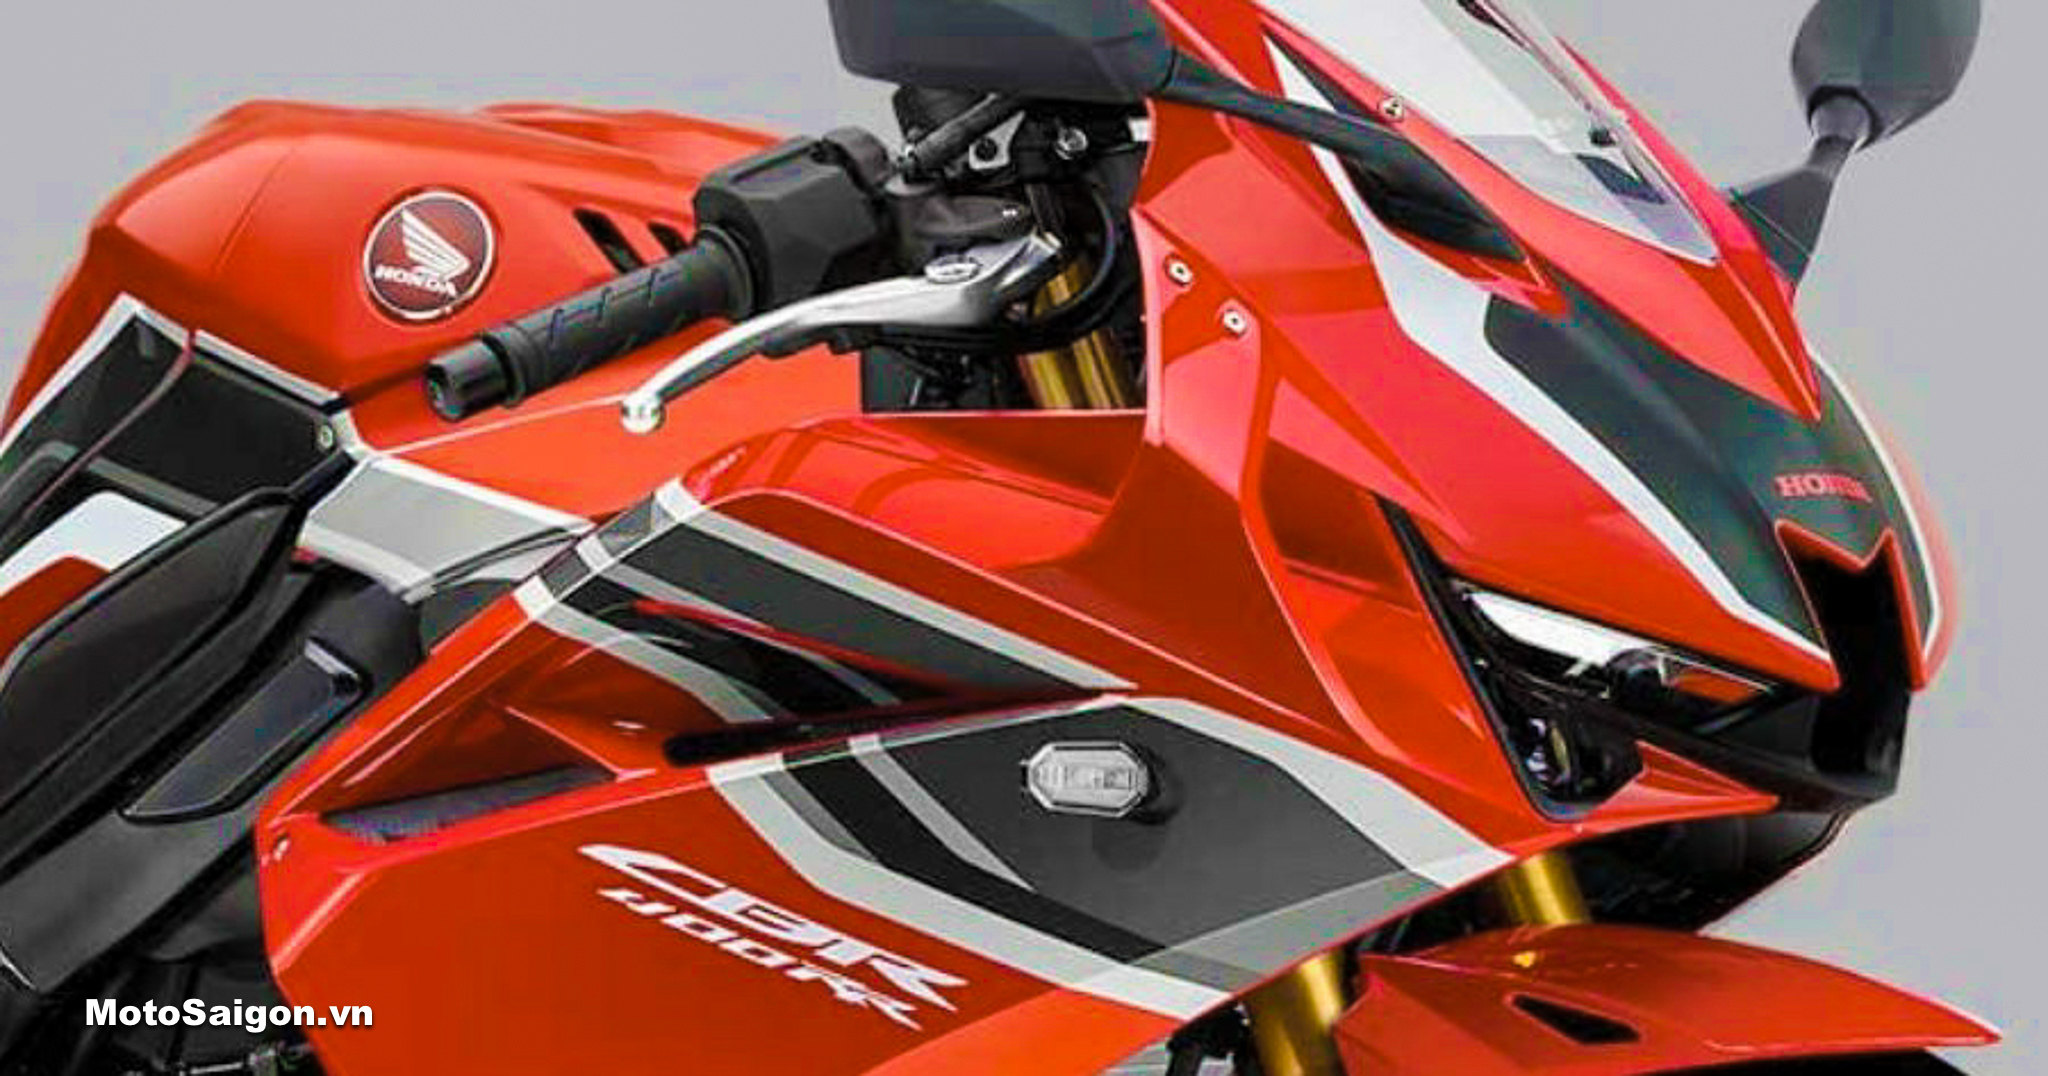 Honda CBR400RR 2022 trang bị động cơ 4 xilanh của CB400F lộ hình ảnh   Motosaigon